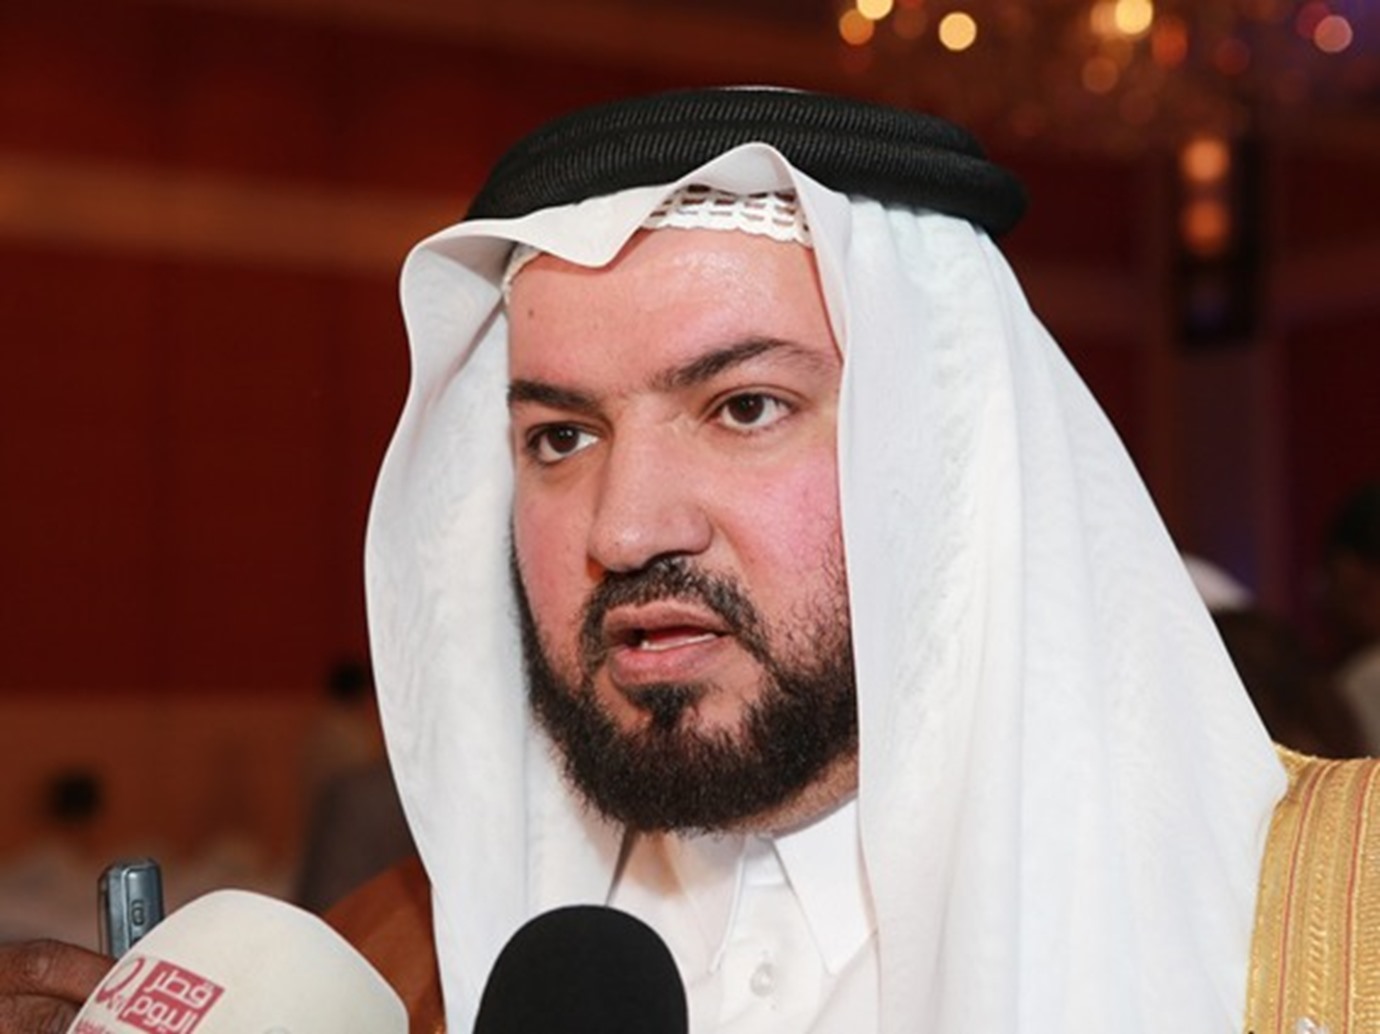 وزير الأوقاف يفتتح جلسات "وآمنهم من خوف" ضمن فعليات الدوحة عاصمة الثقافة في العالم الإسلامي